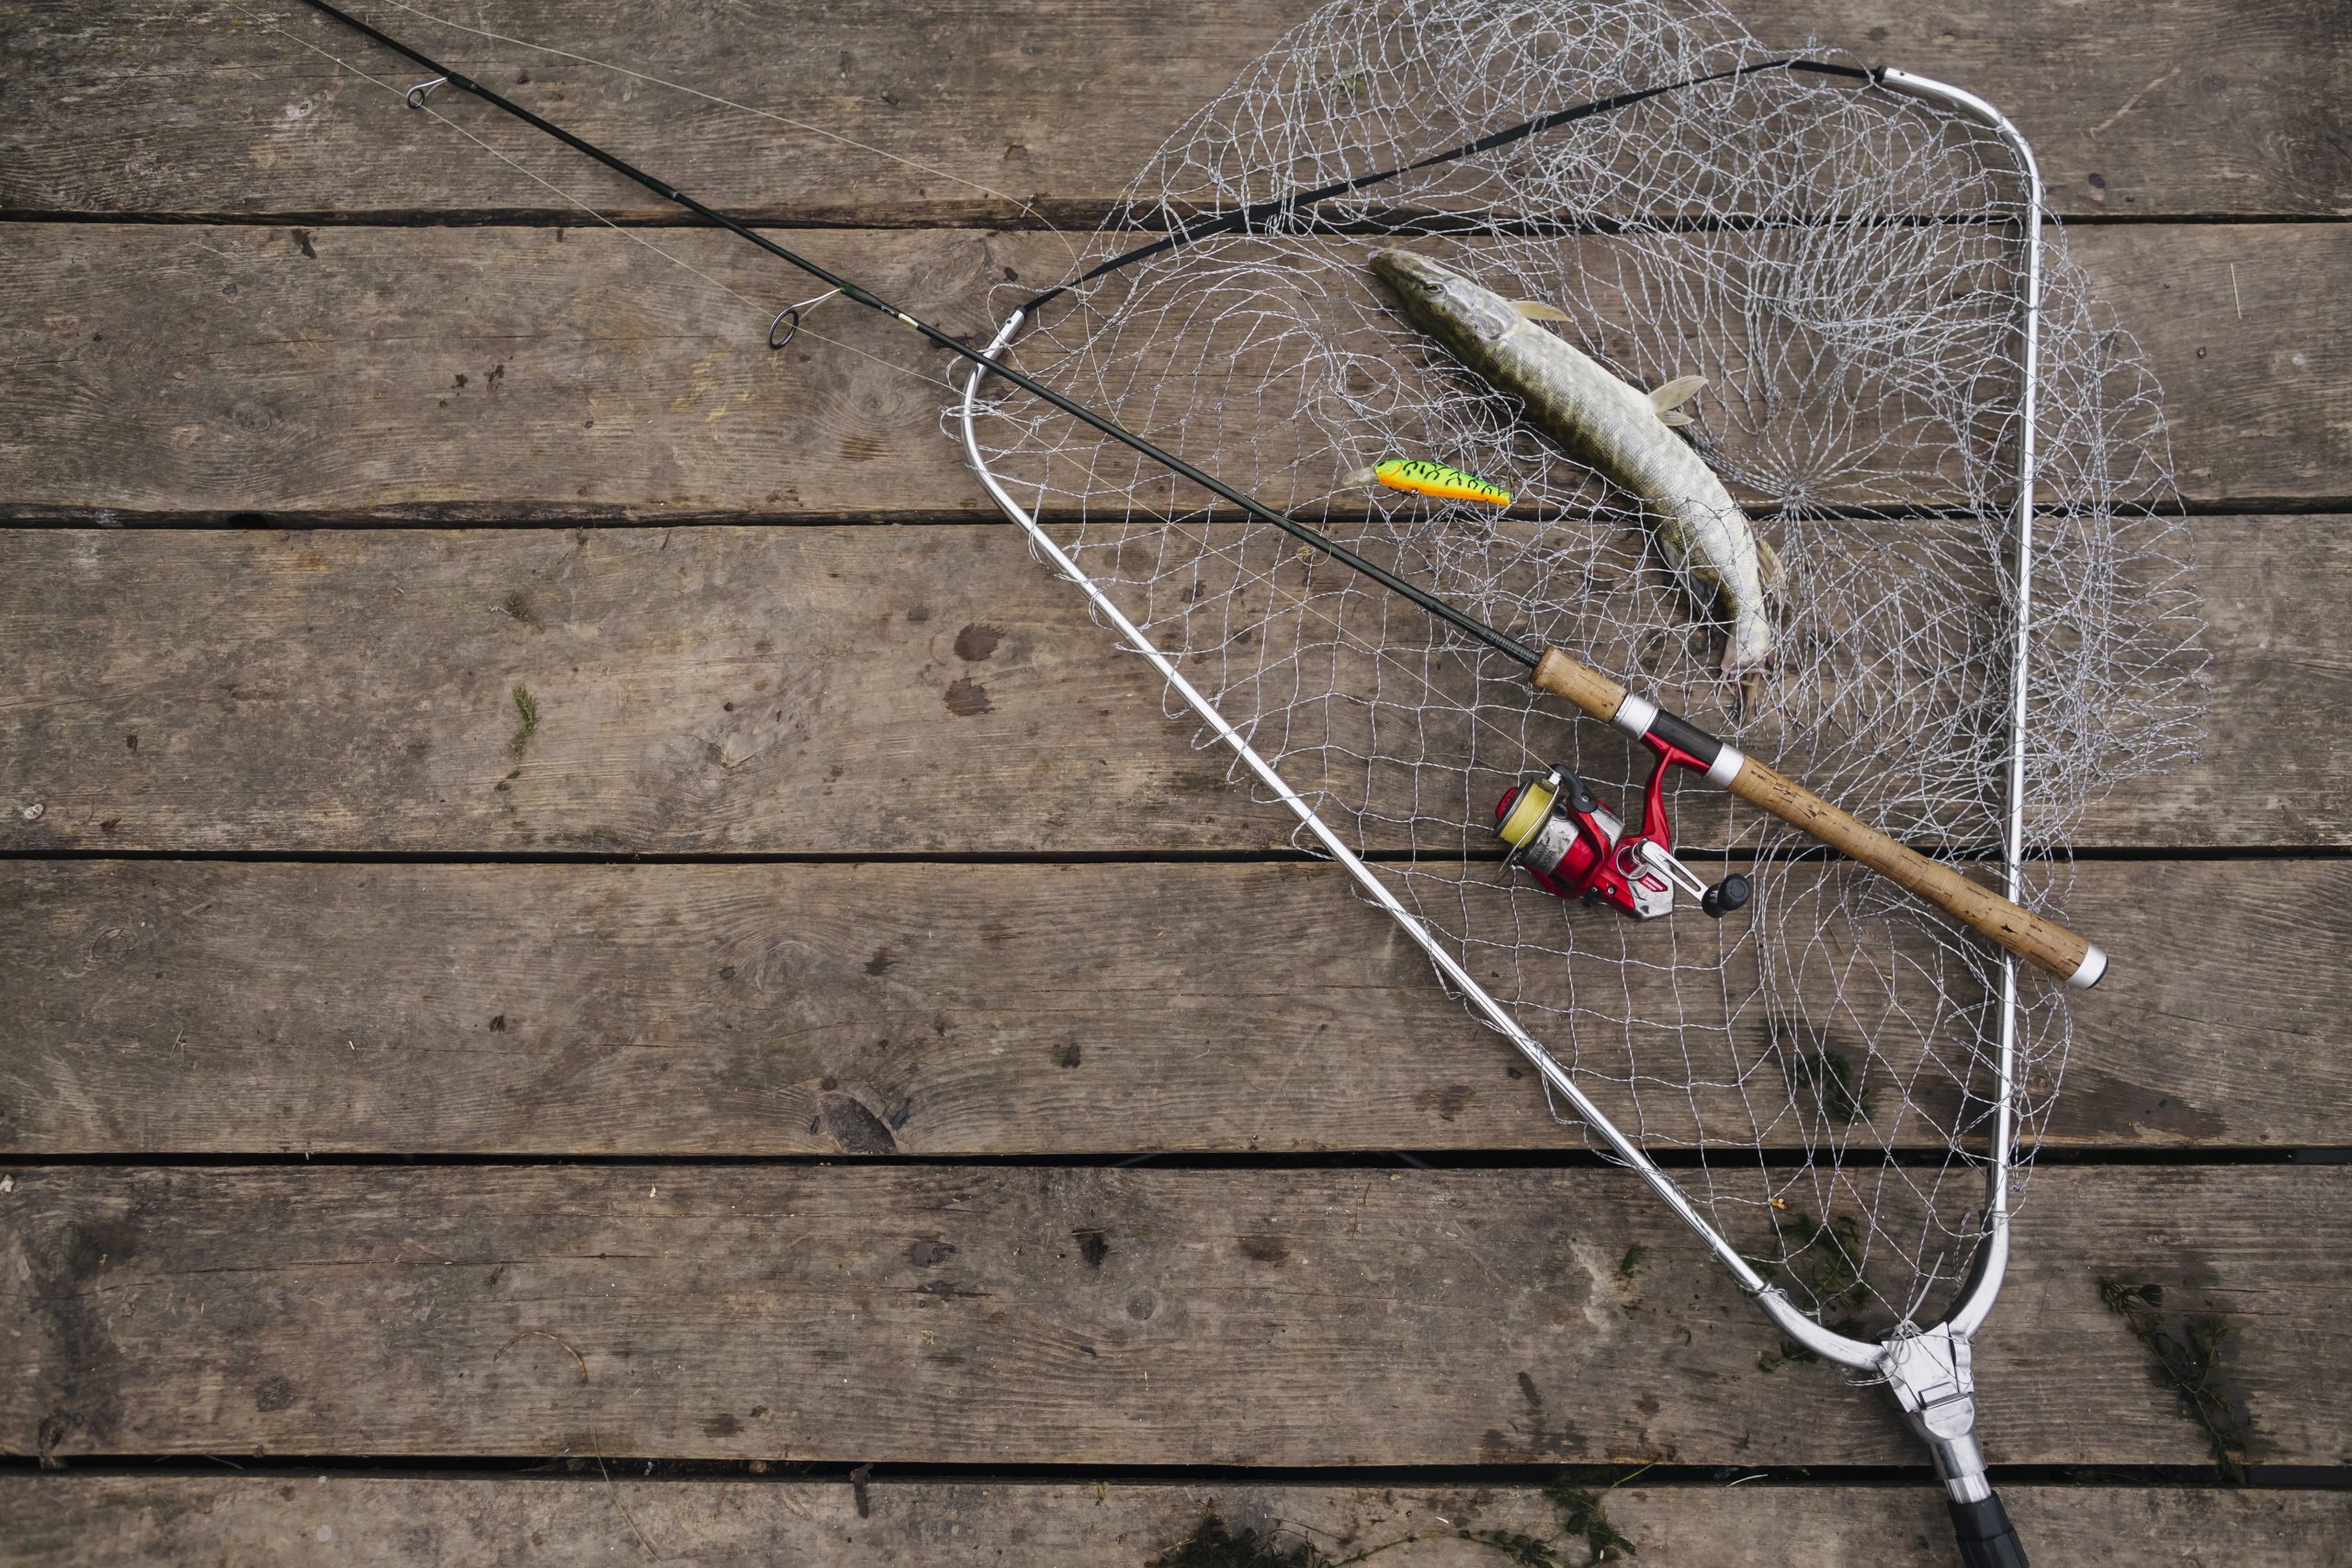 immagine rete e canna da pesca